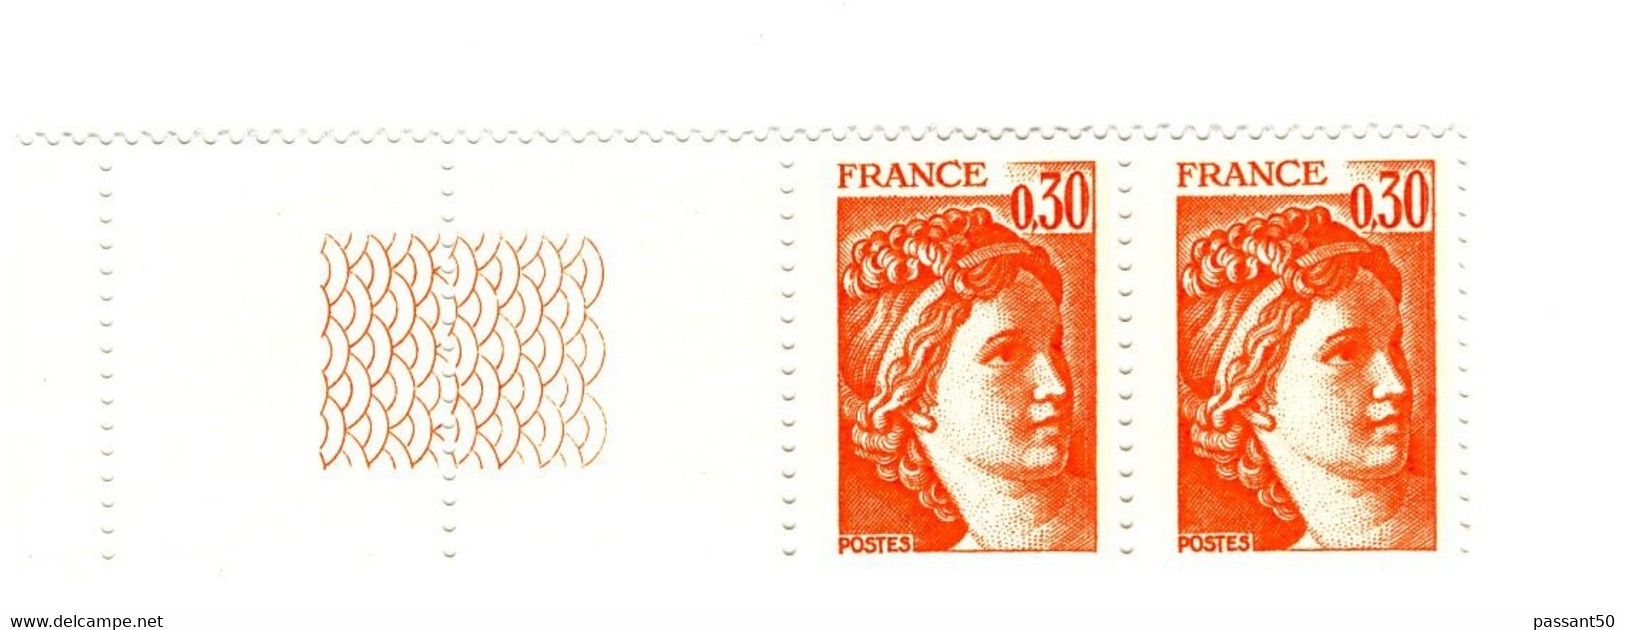 Sabine 0.30fr Orange YT 1968g En Paire Bord De Feuille Guilloché. Superbe Et Pas Courant, Voir Le Scan. Cote YT : 3 €. - Ongebruikt